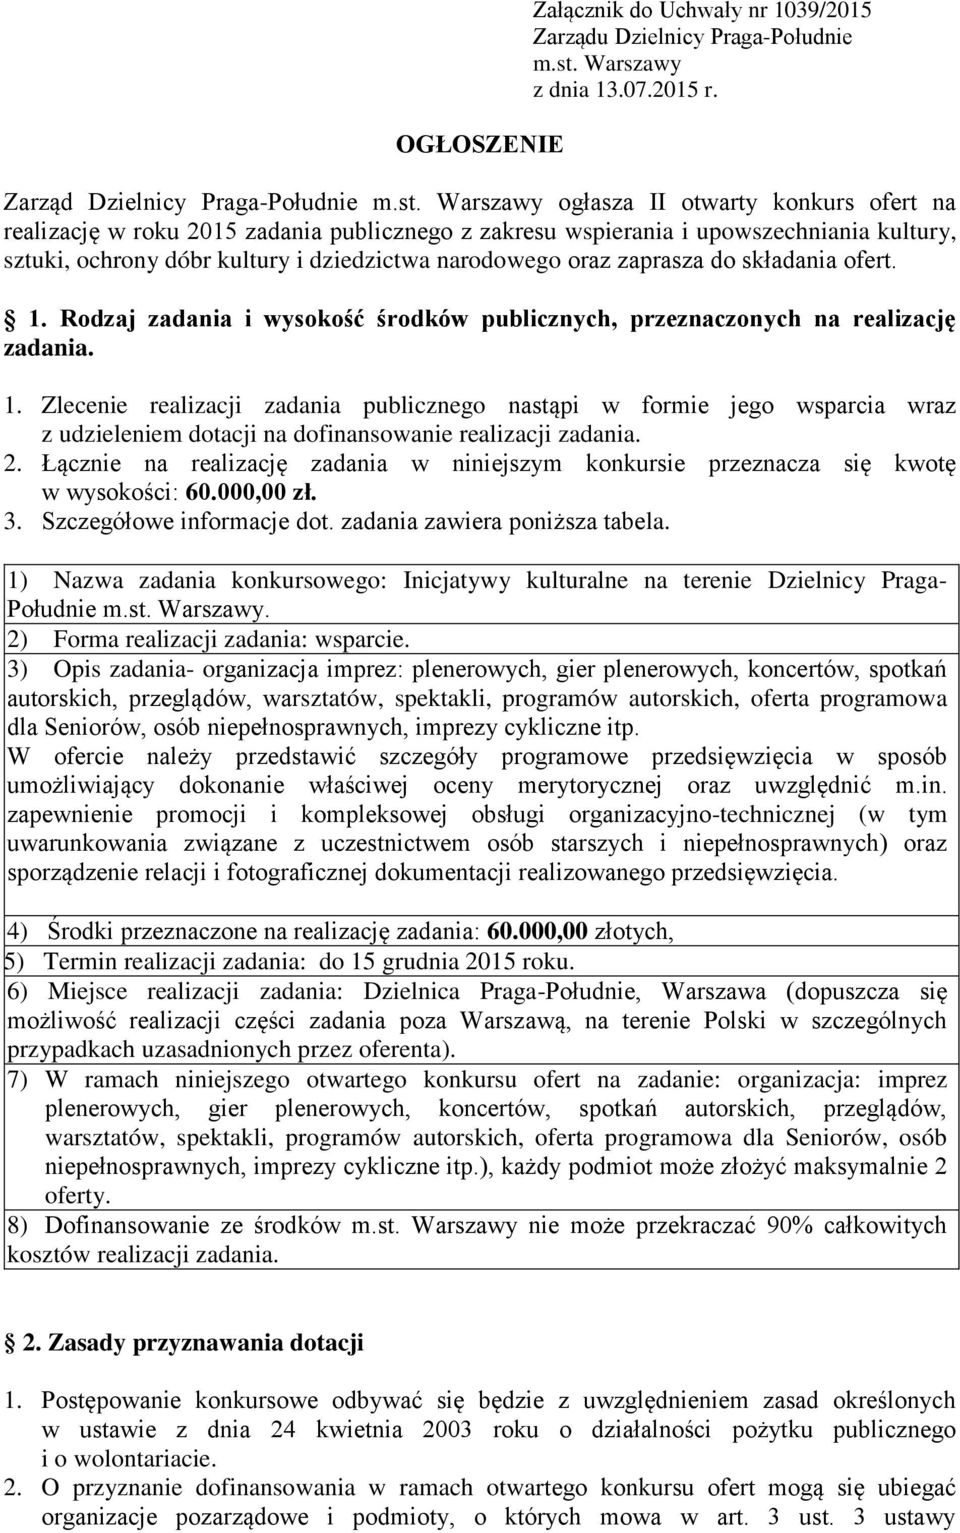 Warszawy ogłasza II otwarty konkurs ofert na realizację w roku 2015 zadania publicznego z zakresu wspierania i upowszechniania kultury, sztuki, ochrony dóbr kultury i dziedzictwa narodowego oraz